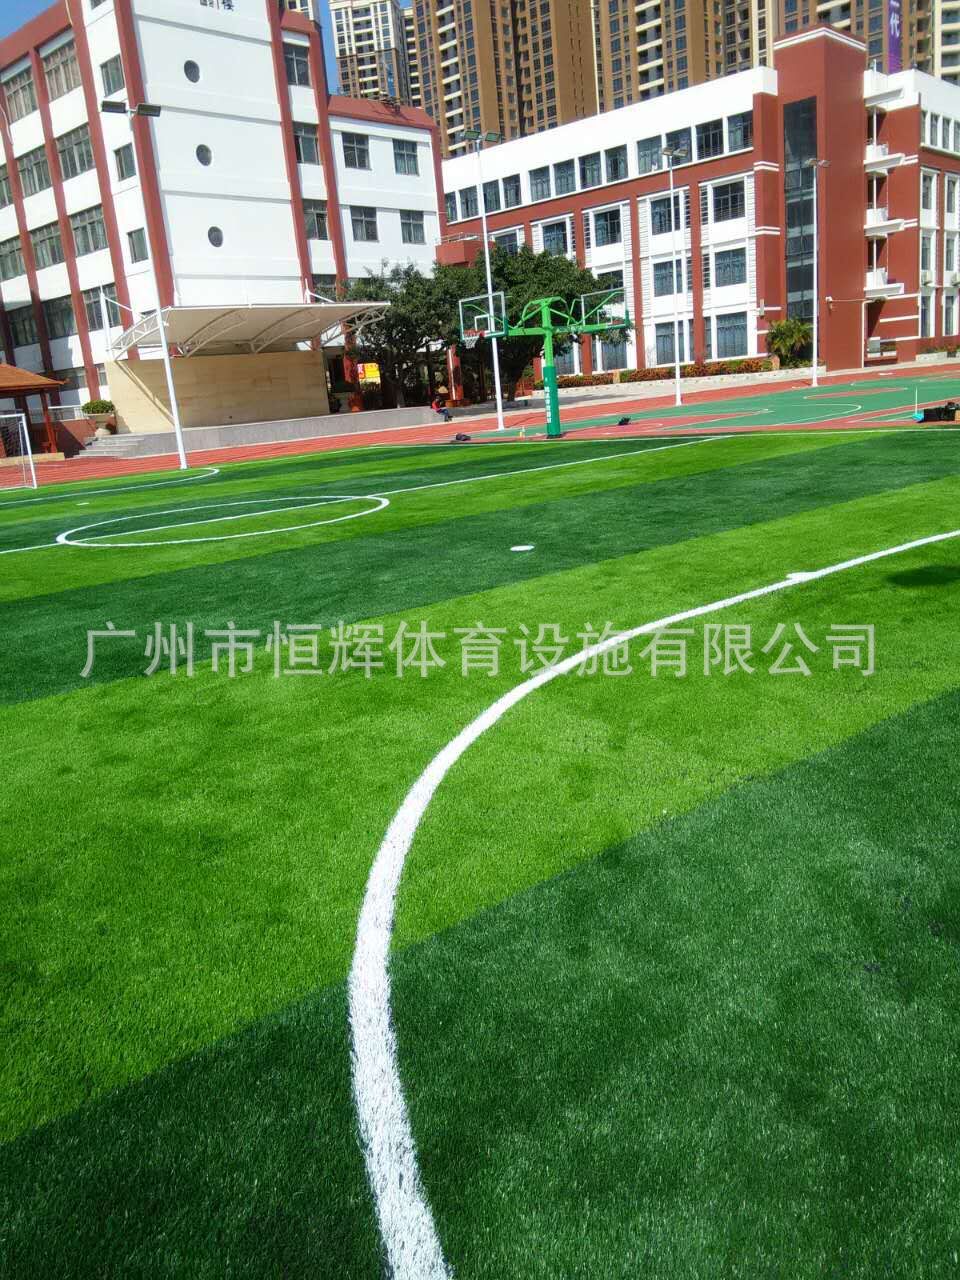 塑胶球场深圳马田小学足球场、篮球场完工